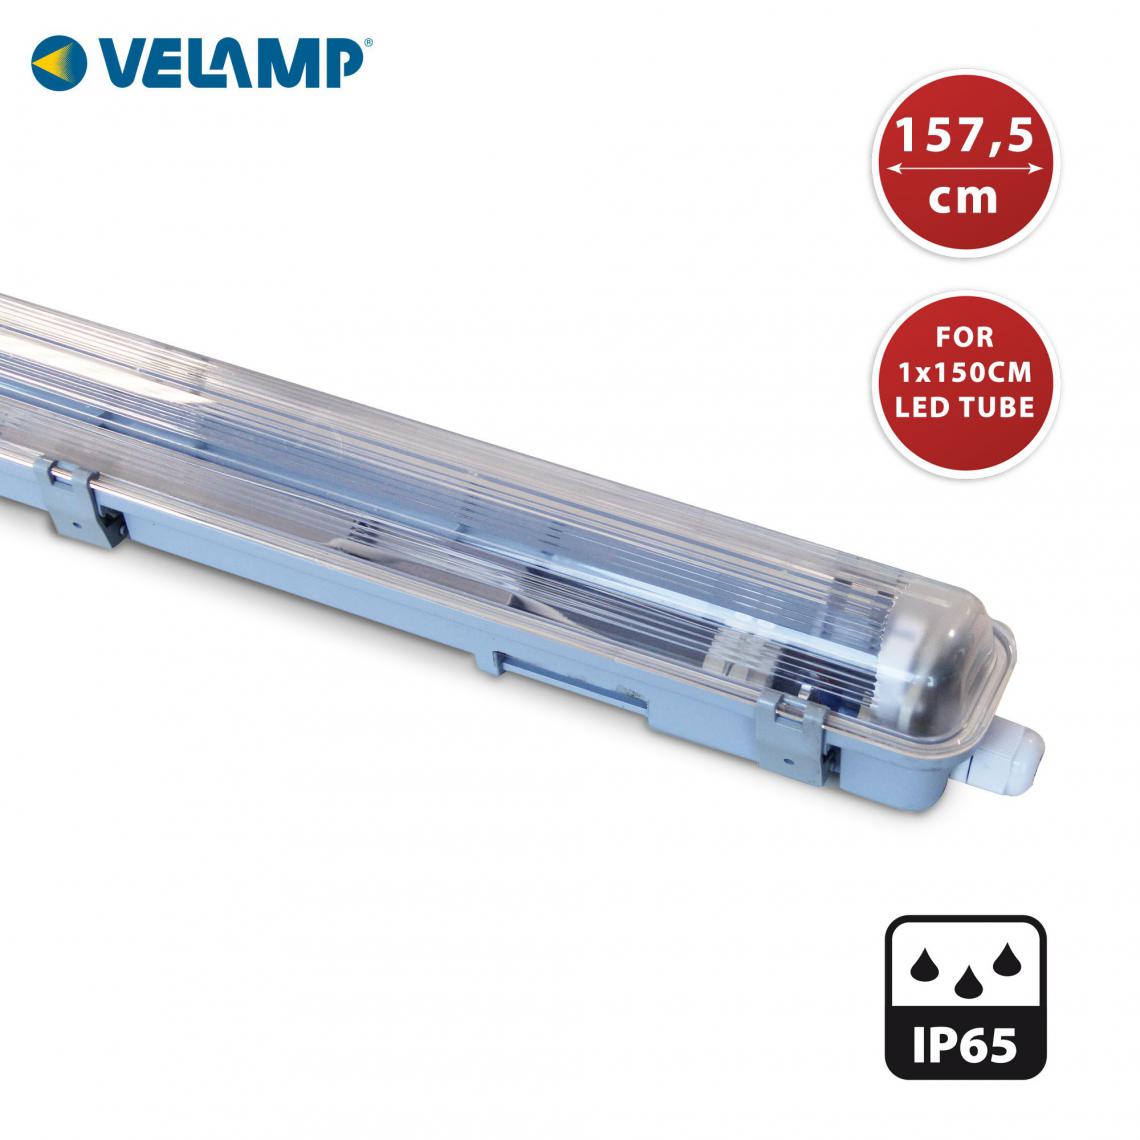 Velamp - Réglette exclusivement pour 1 tube LED de 150cm. IP65 - Spot, projecteur